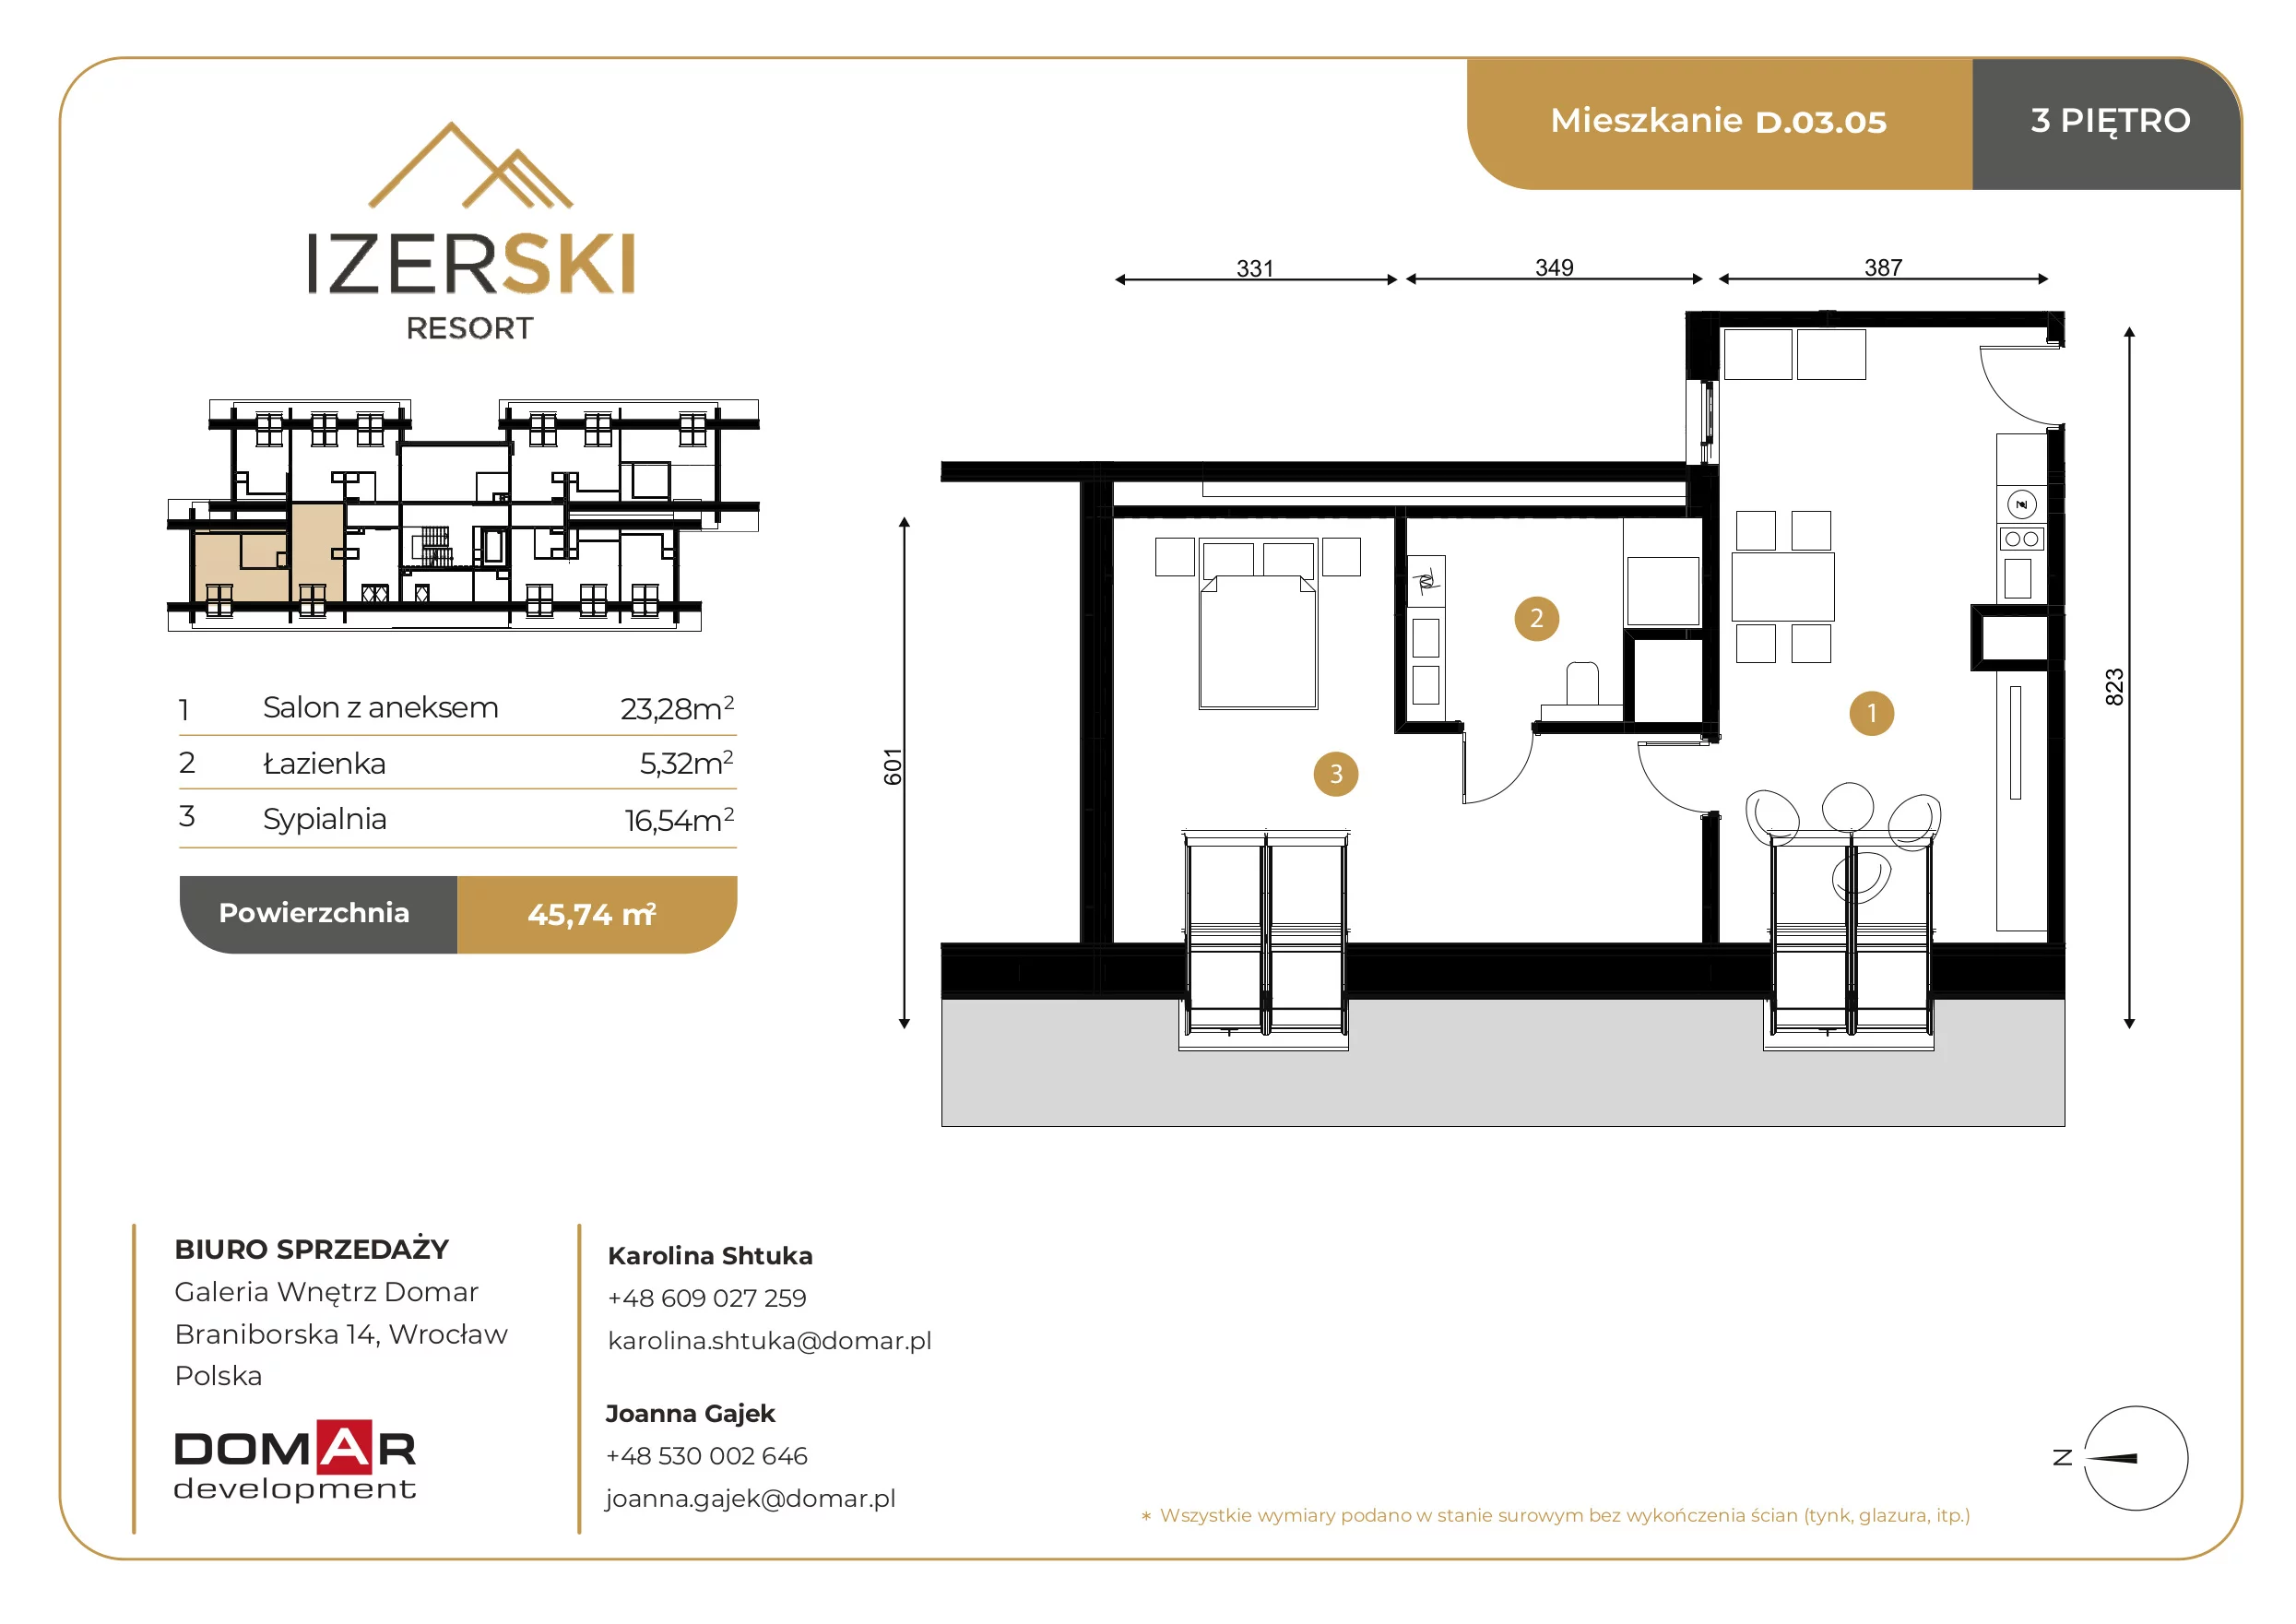 Apartament inwestycyjny 45,14 m², piętro 3, oferta nr D.03.05, IzerSKI Resort, Świeradów-Zdrój, ul. Jana Kilińskiego 2